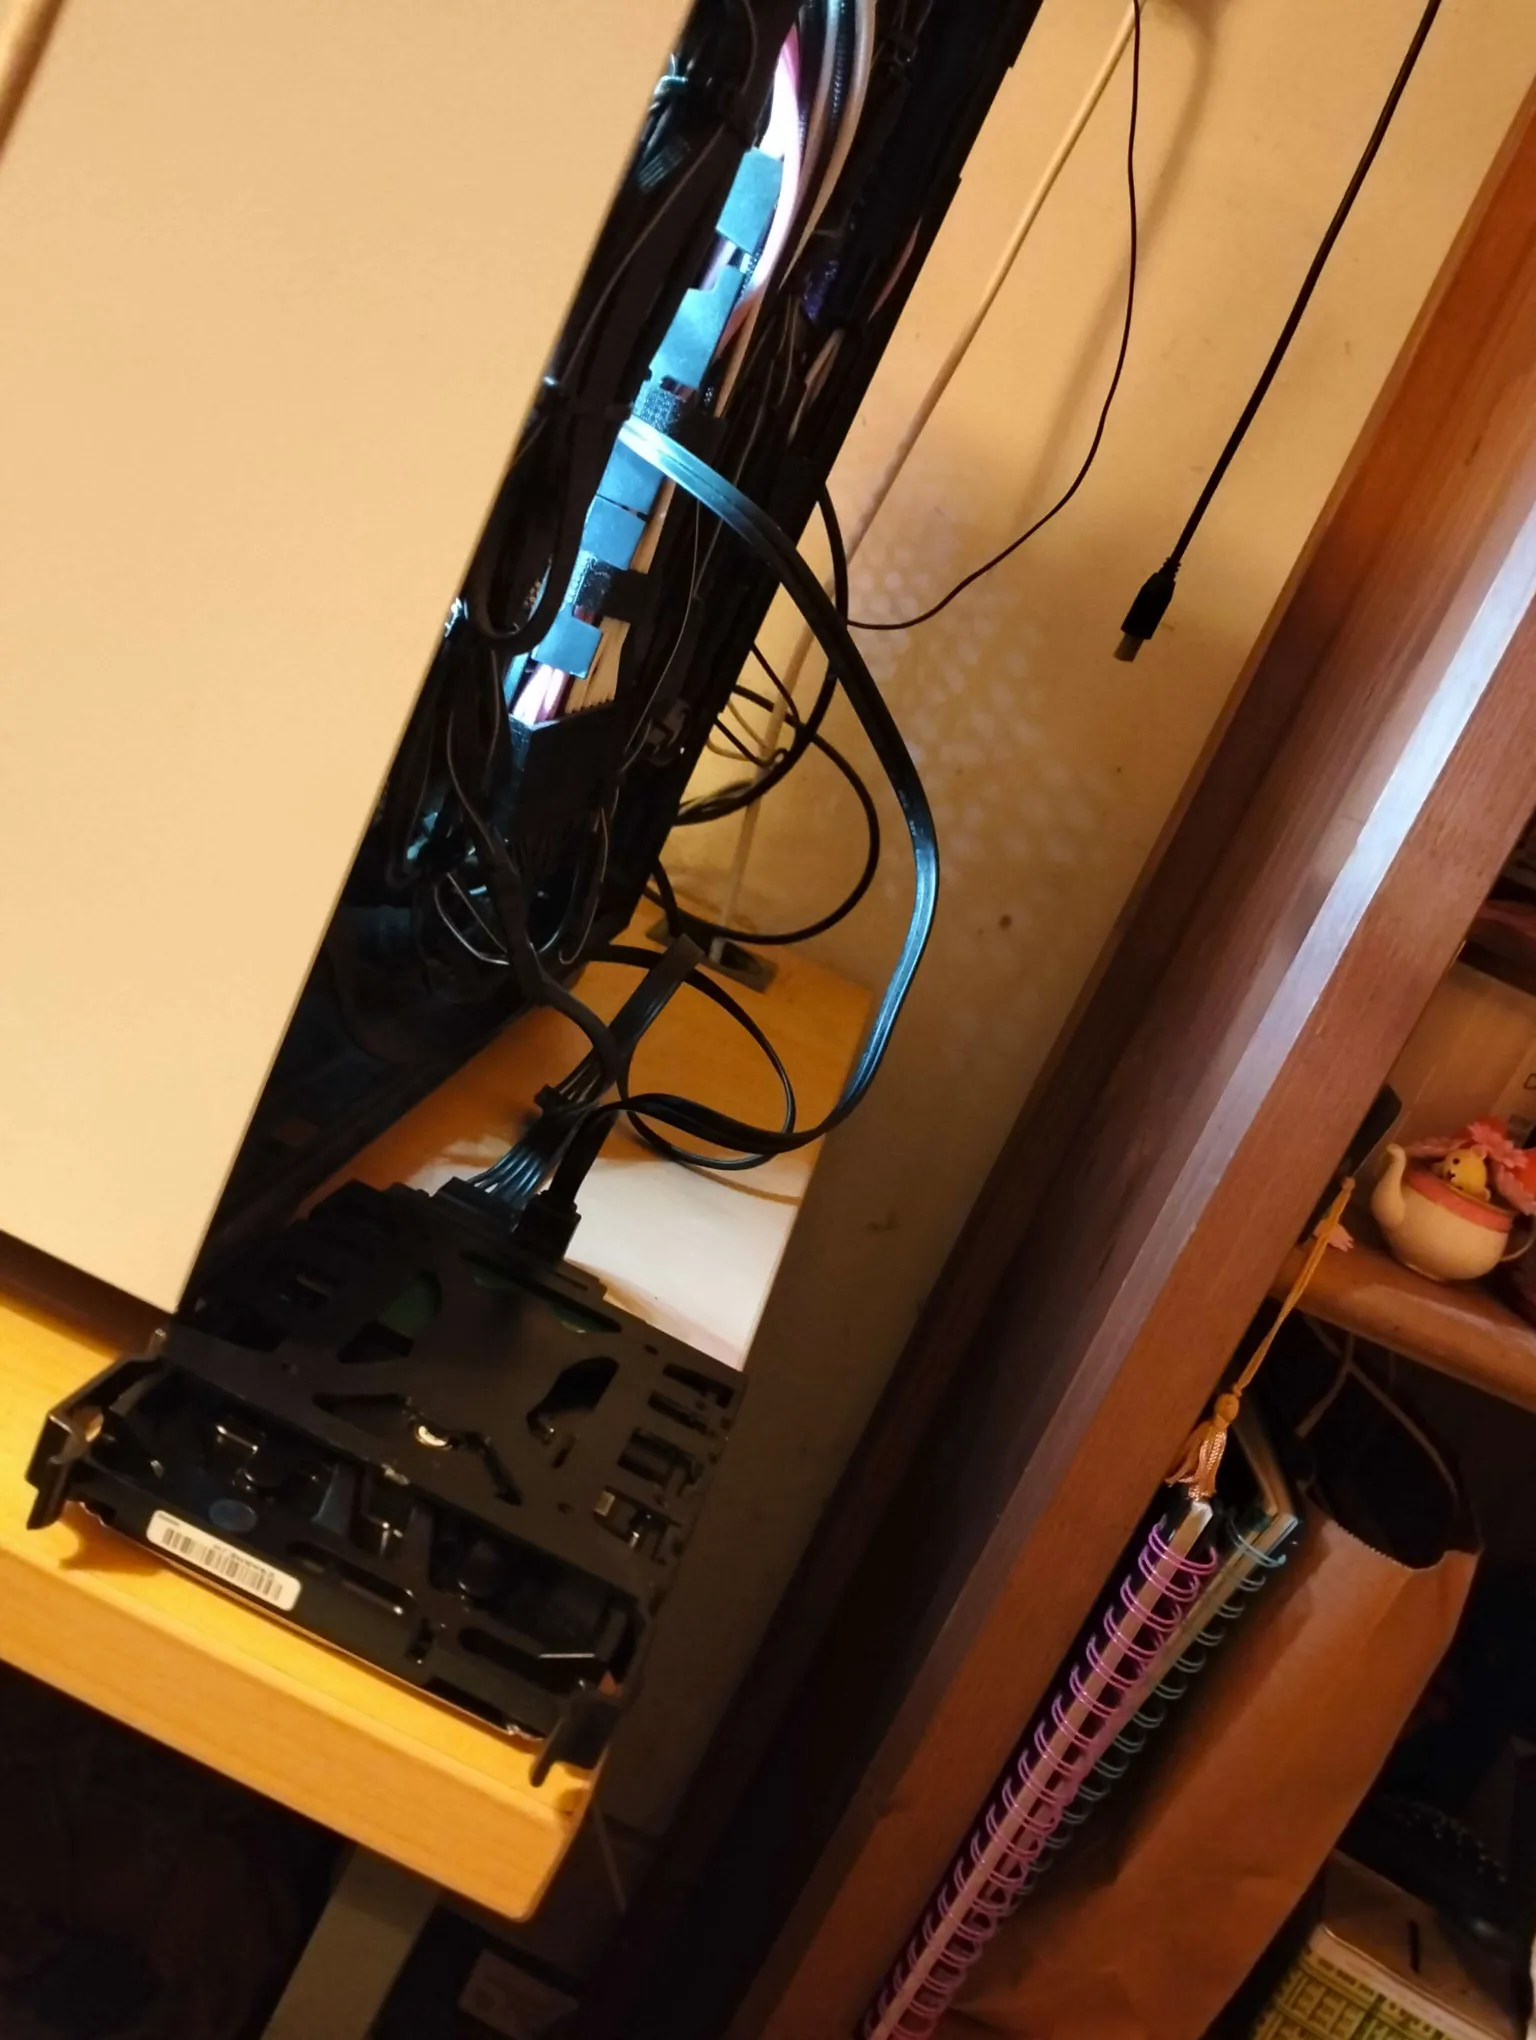 A photo of the back of a PC. There is a HDD on the table, externally.